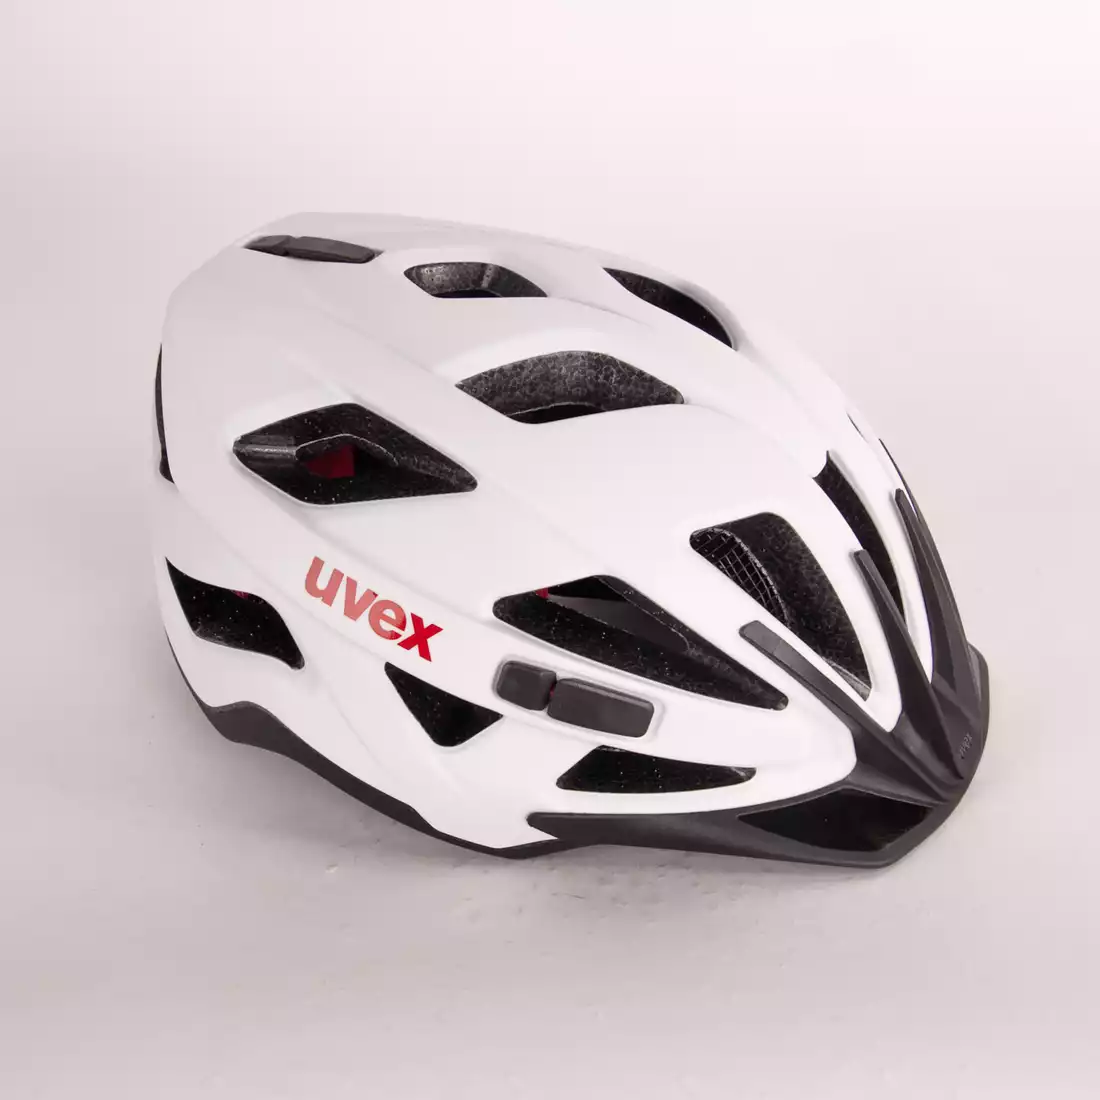 Kask rowerowy UVEX Active CC biało-czarny